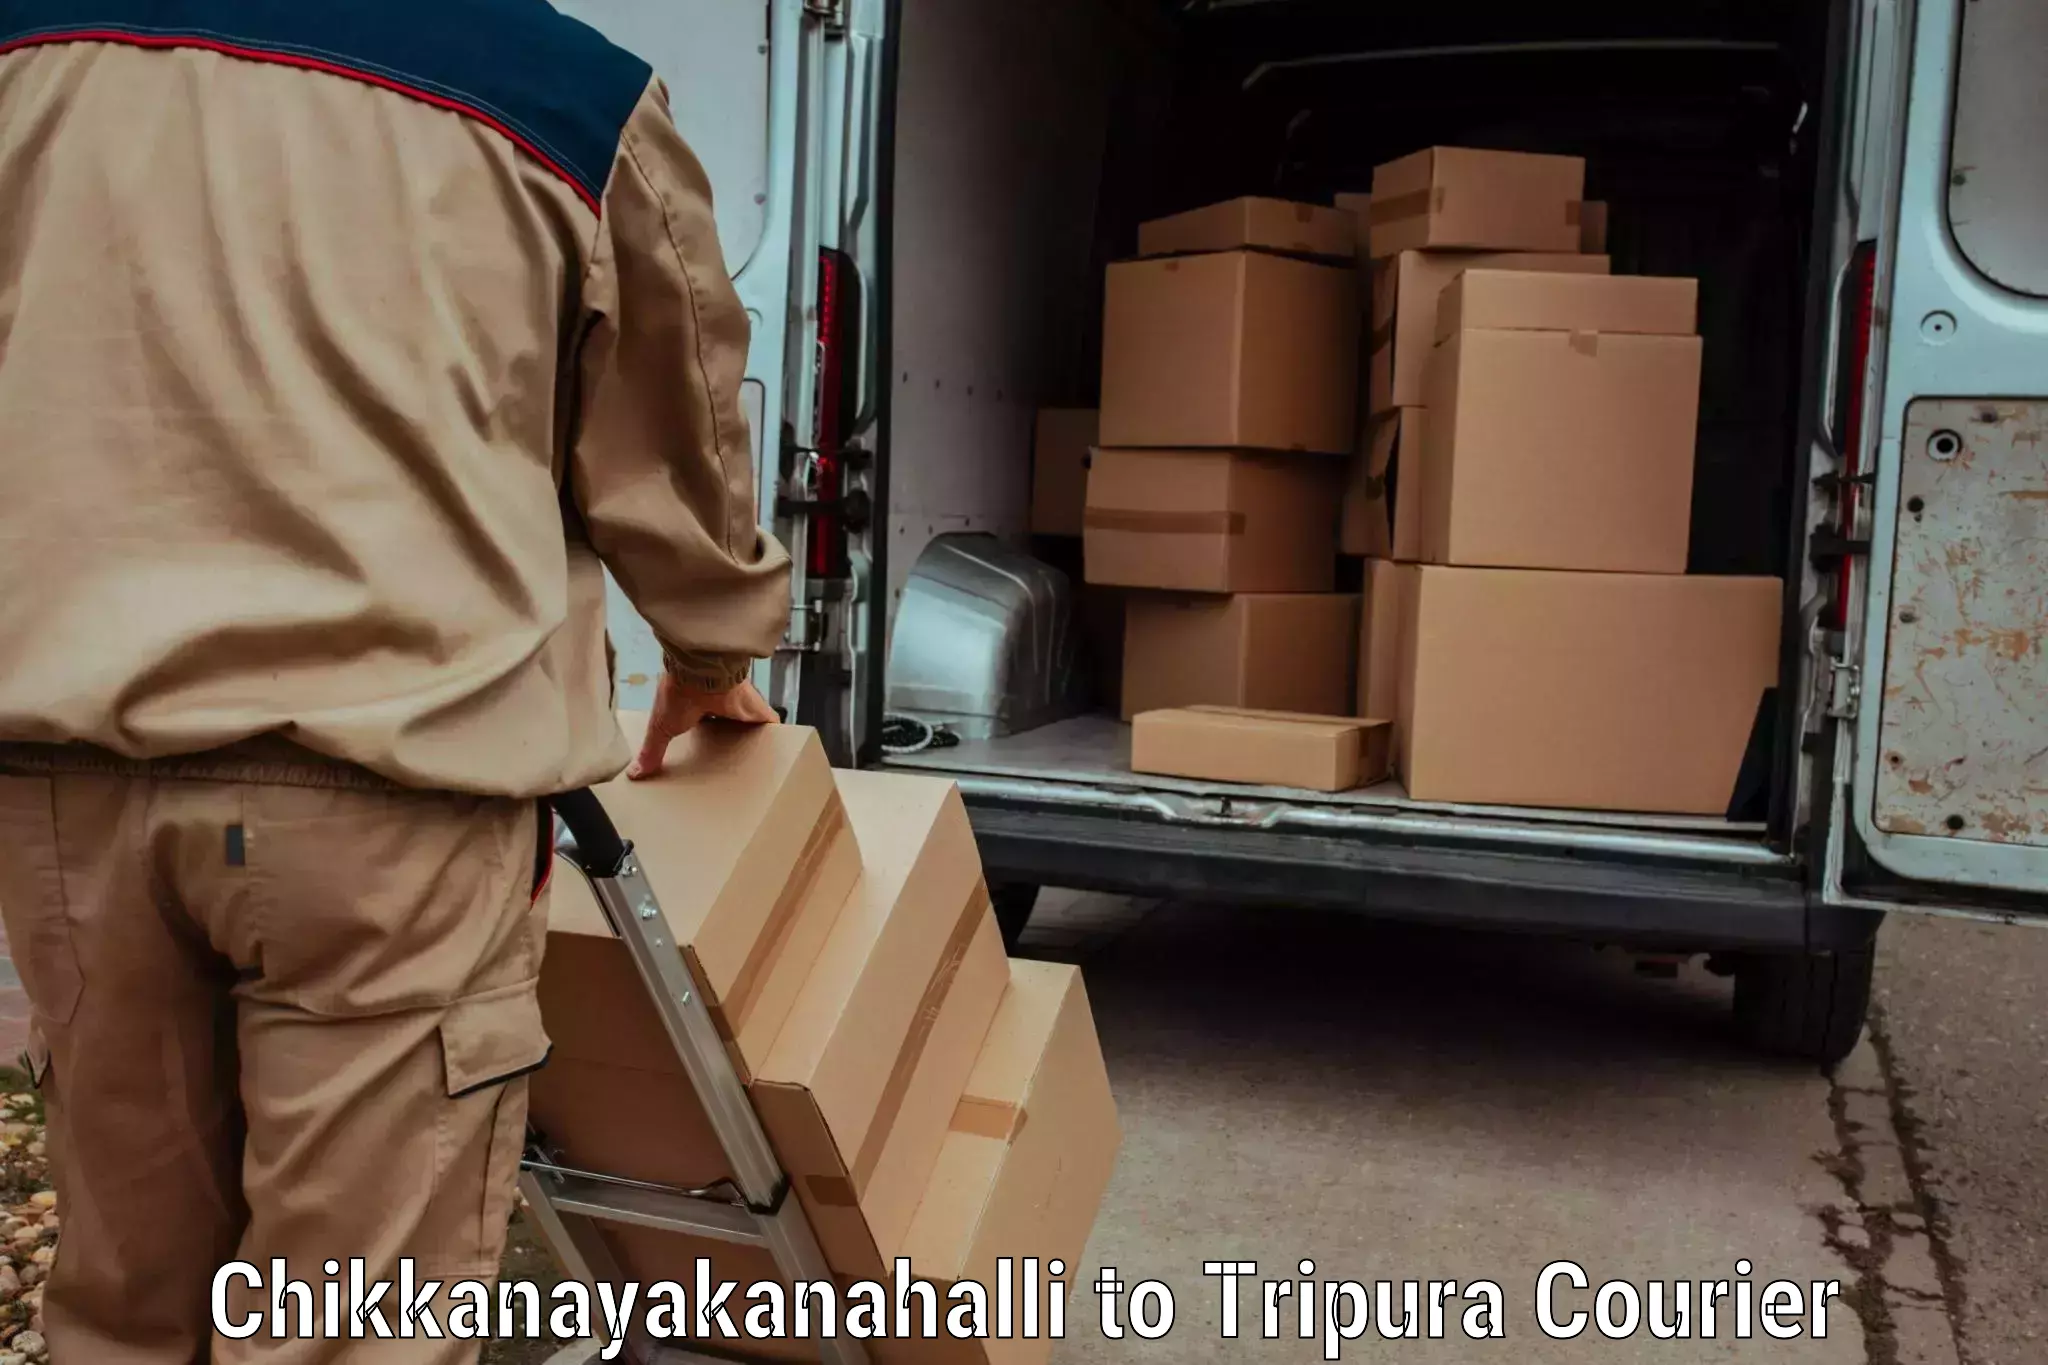 Budget-friendly baggage courier Chikkanayakanahalli to Tripura